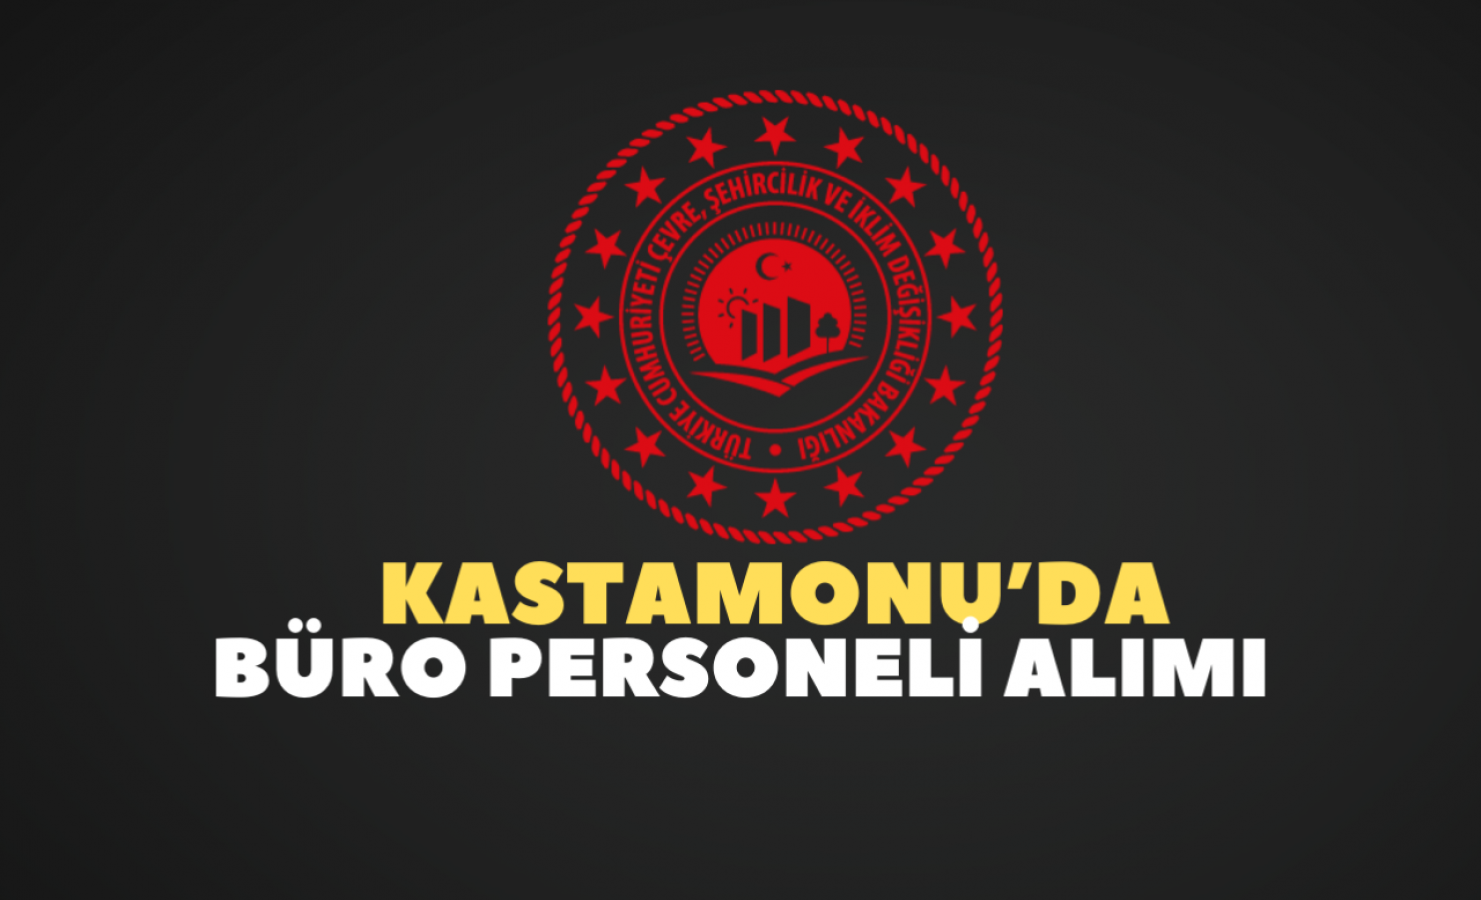 Kastamonu'da kamuya personel alınacak!;